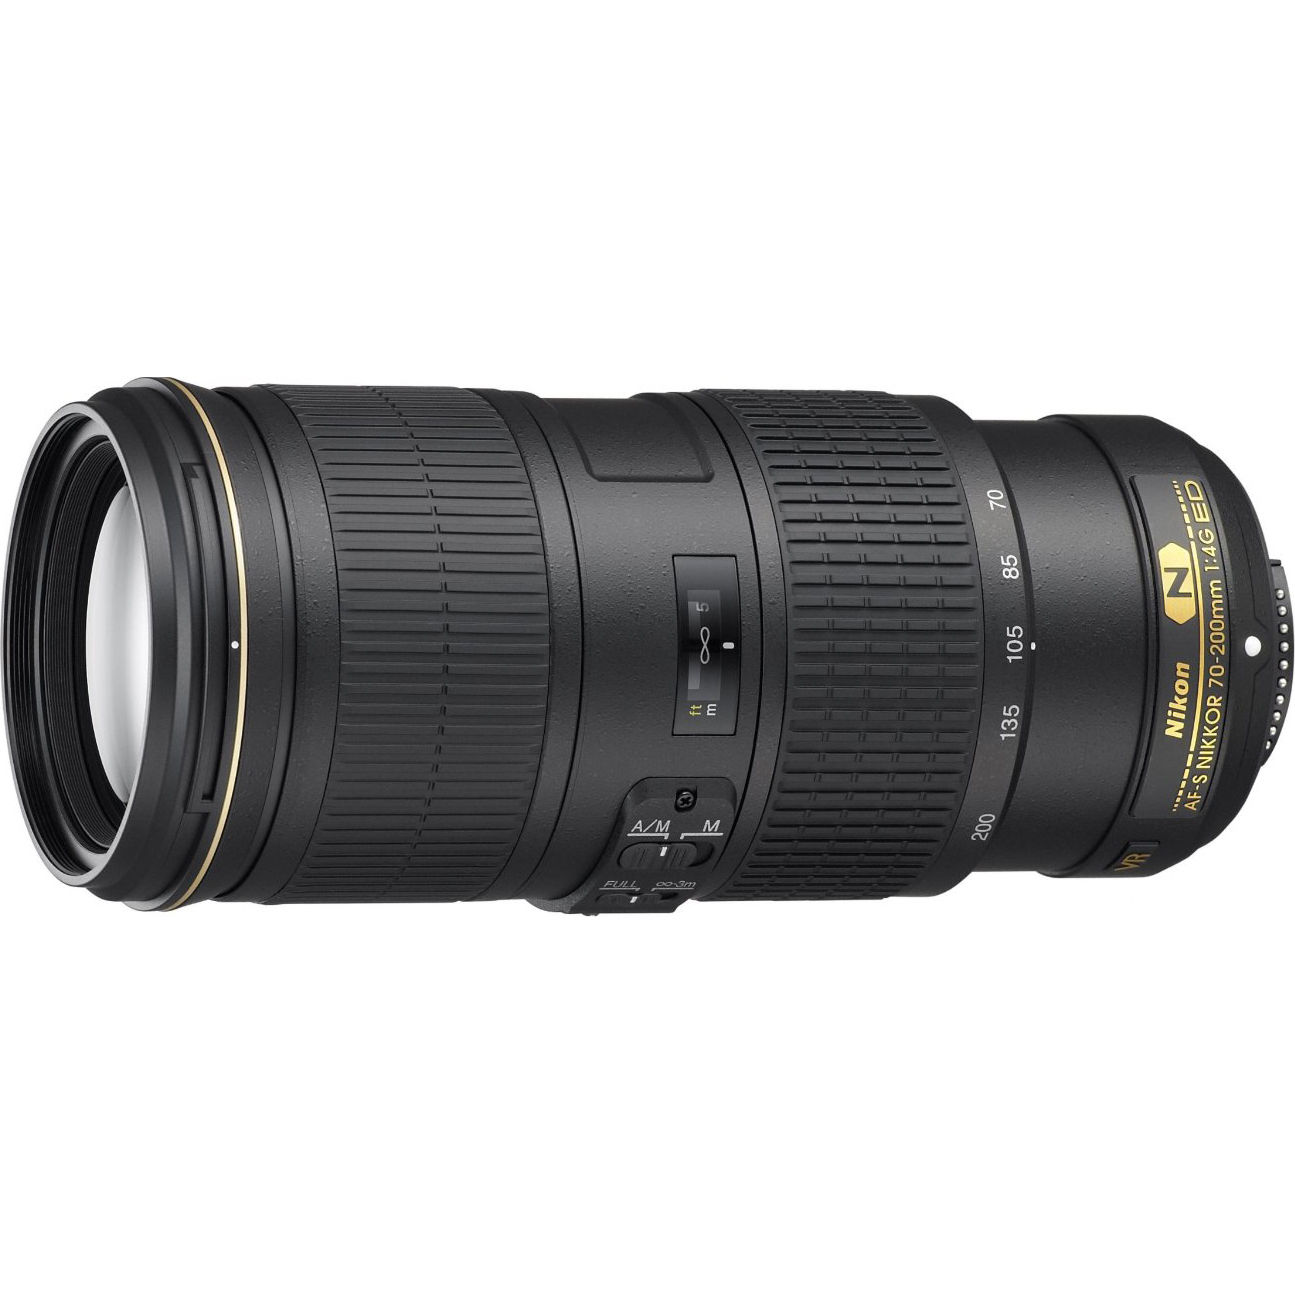 Hot Deal – AF-S NIKKOR 70-200mm f/4G ED VR Lens for $999 ! (Gray Market)